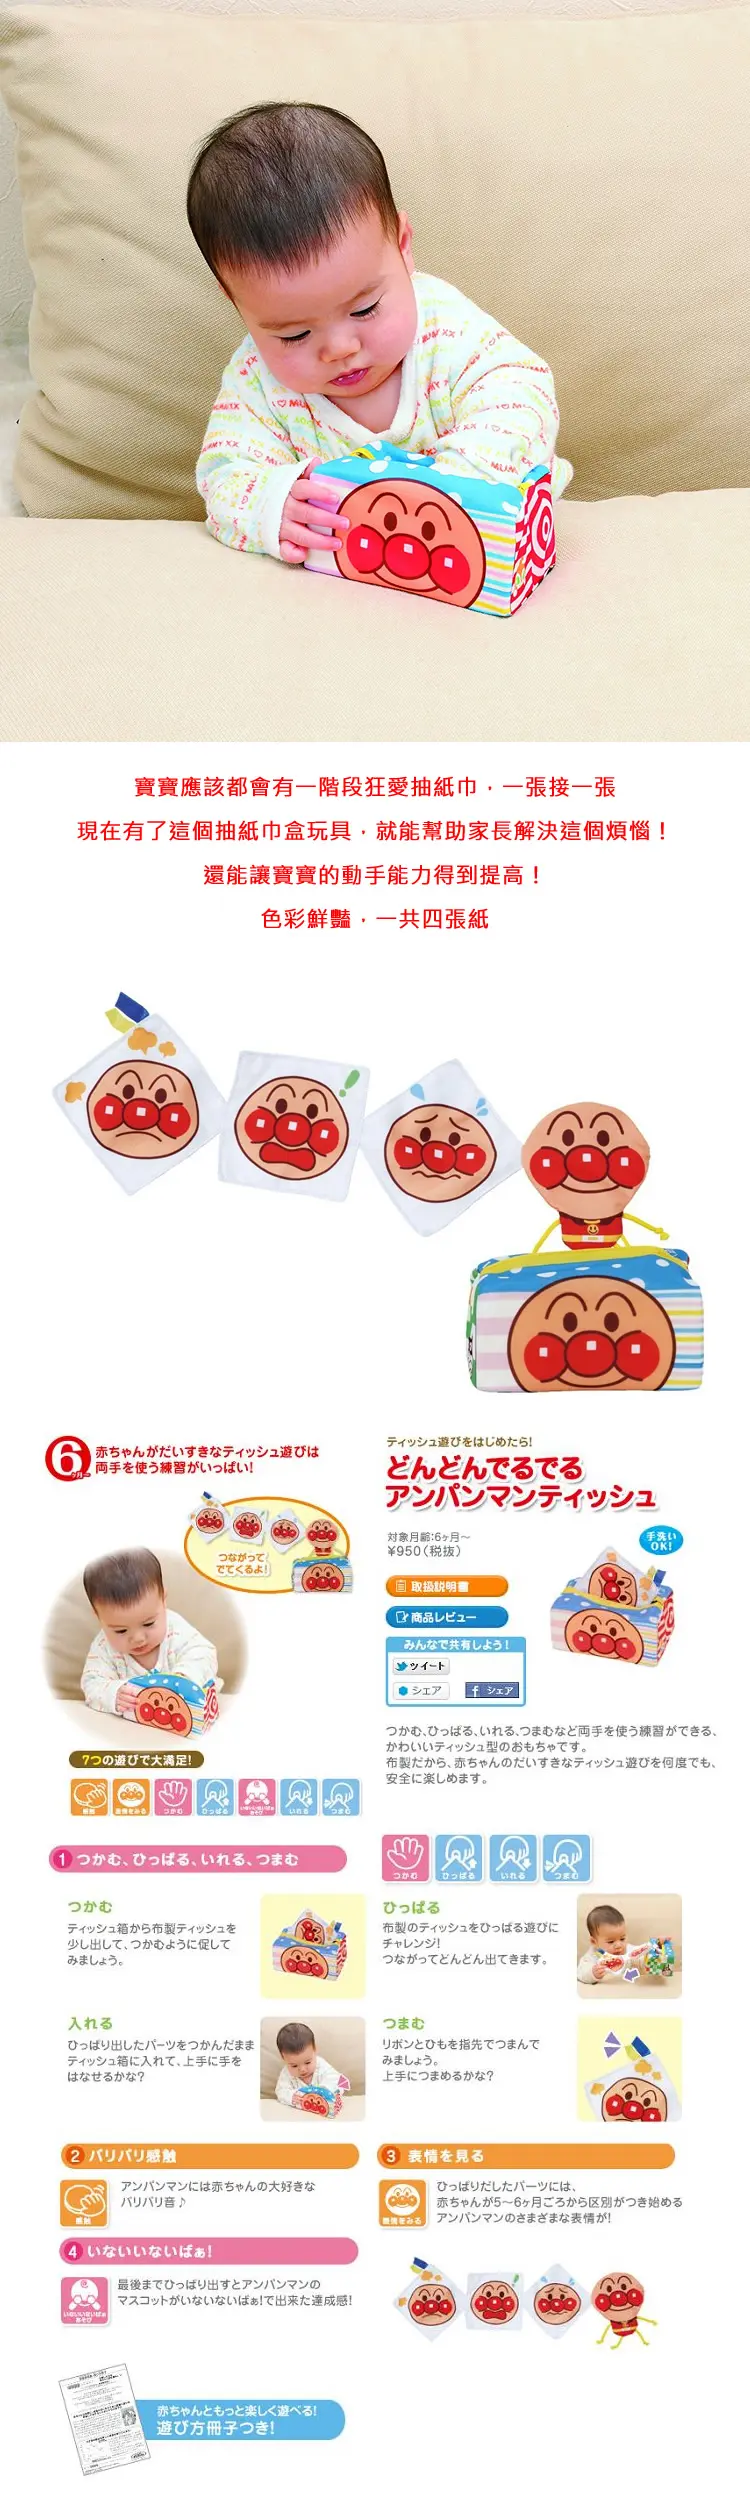 面包超人 布质奇趣纸巾盒玩具